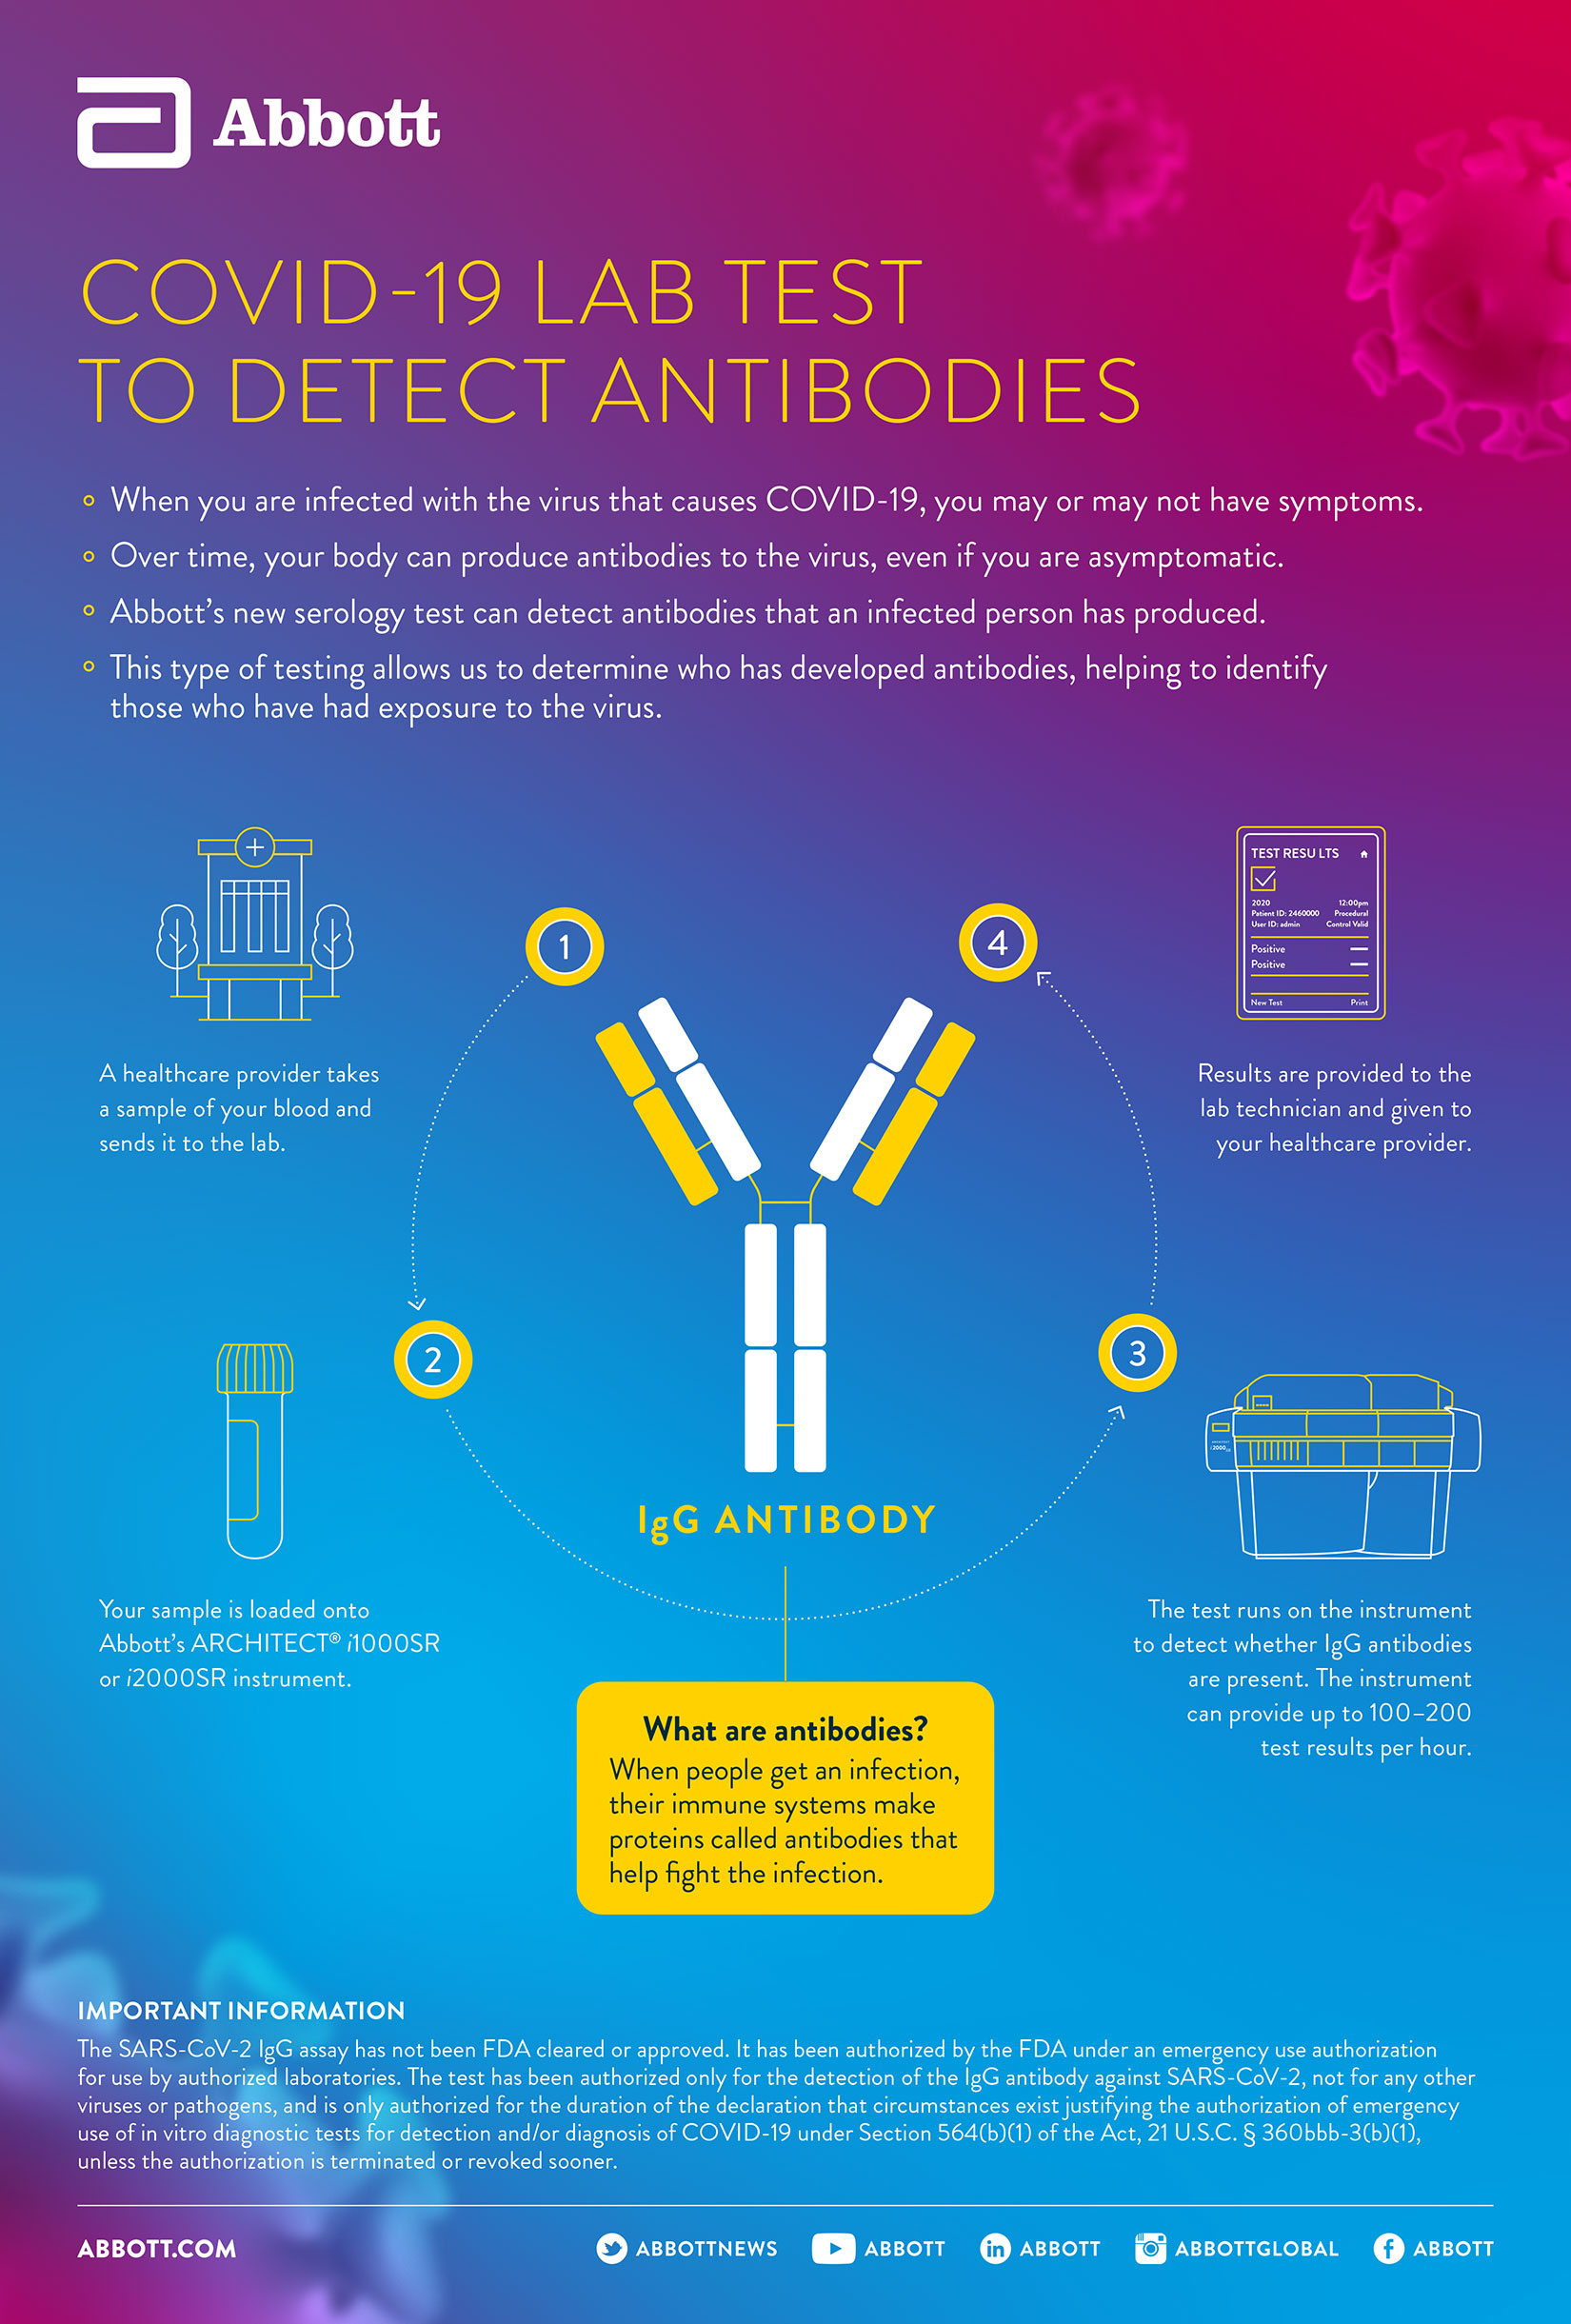 Serology Antibody testing